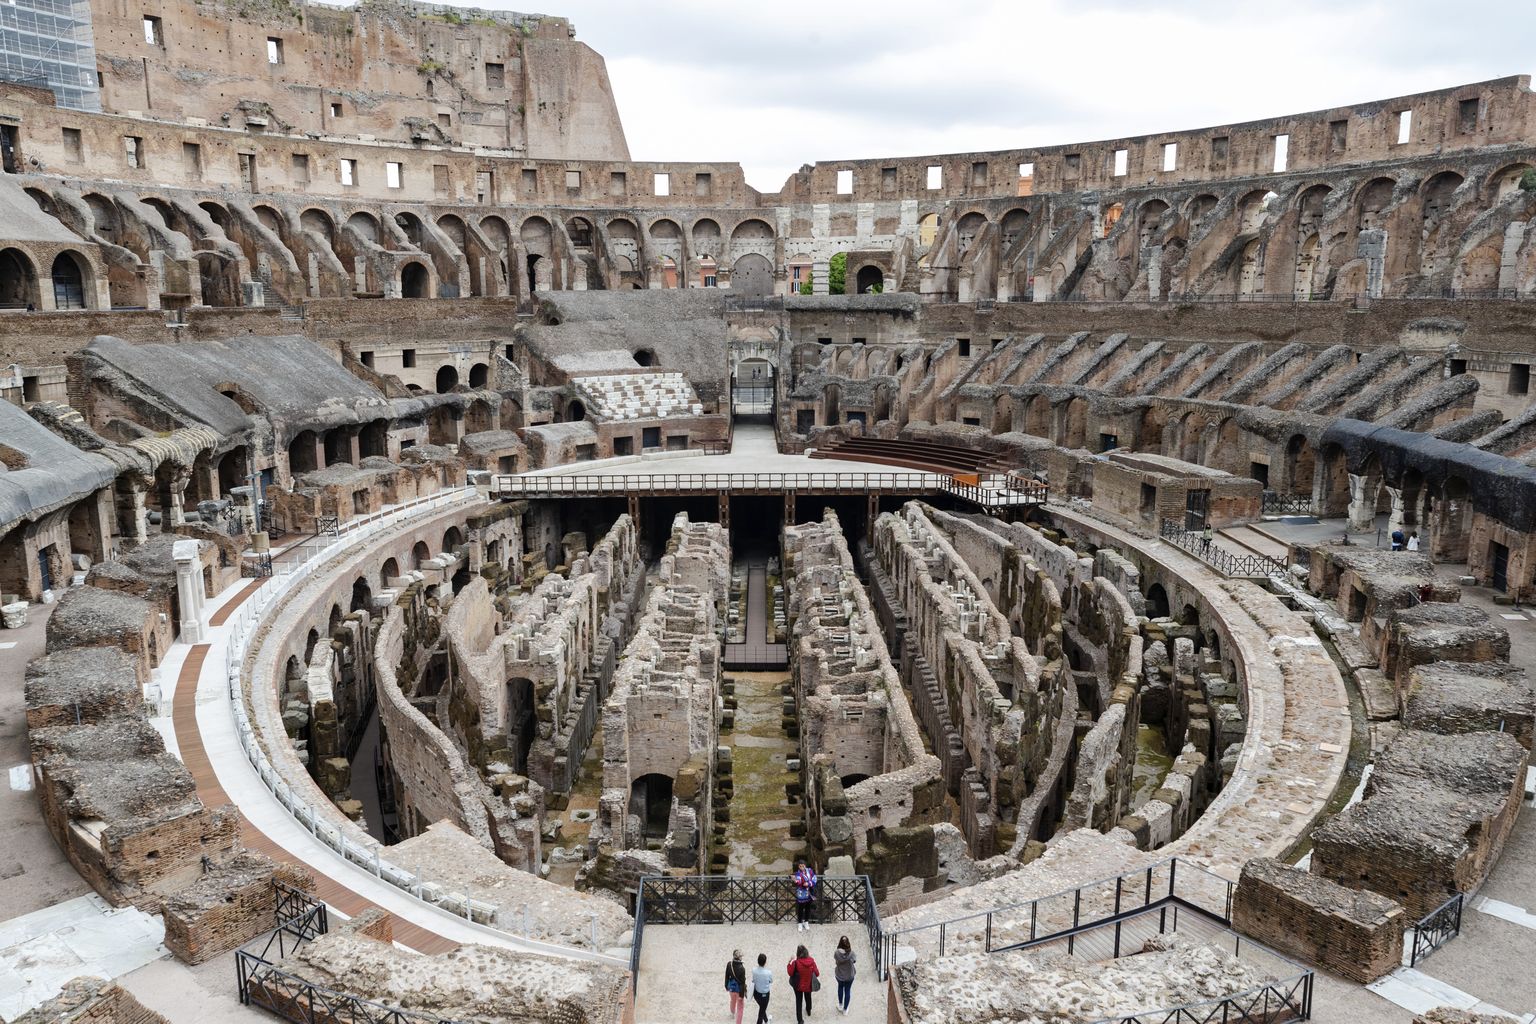 Rooma Colosseumi gladiaatorite areeni ala, näha on tunneleid, kus sajandeid tagasi olid enne etendusi gladiaatorid, relvad, loomad ja abilised